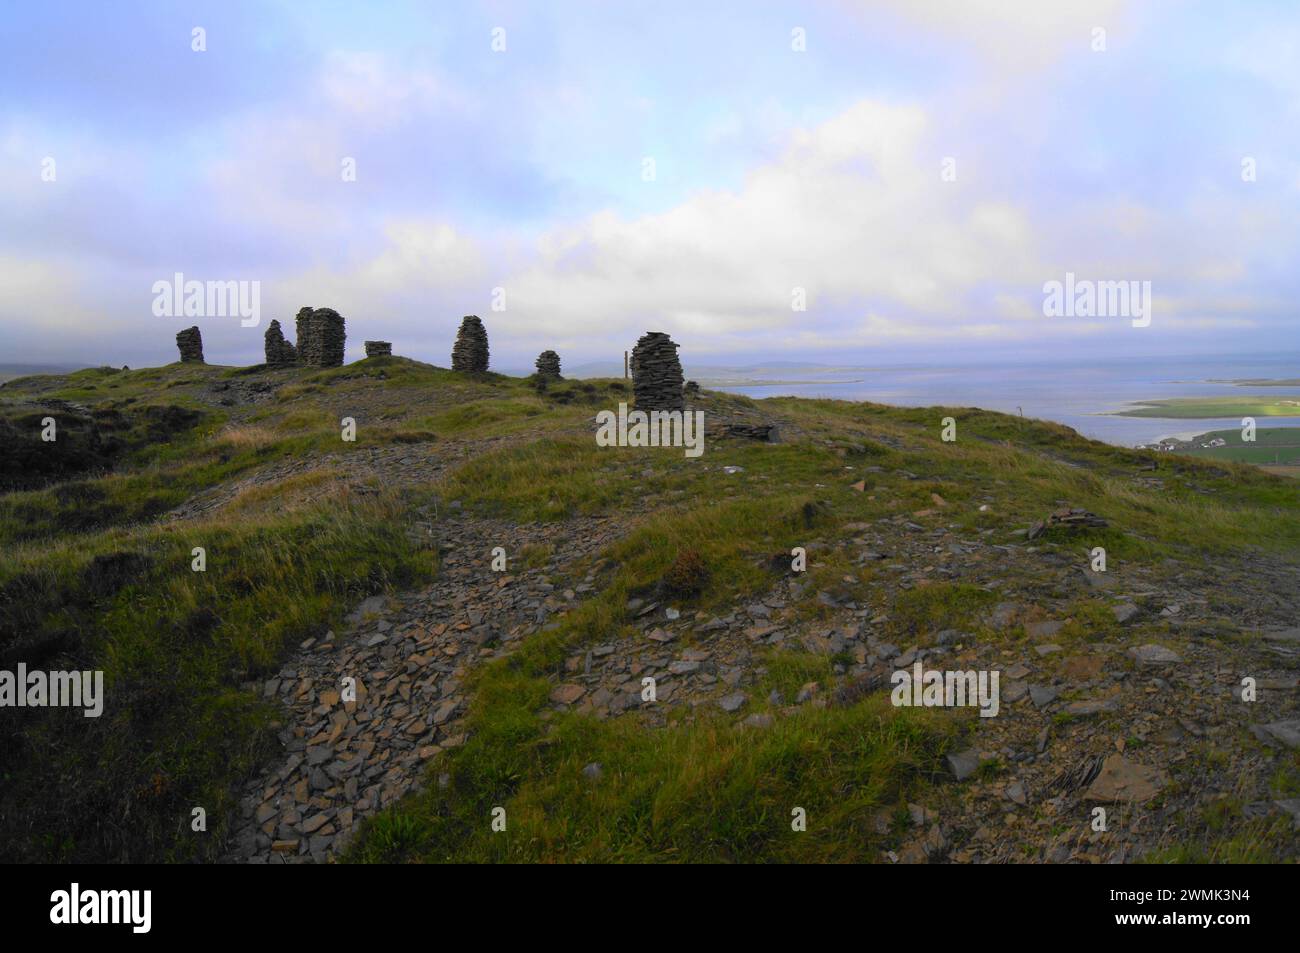 Stone Men (Cairns) au-dessus de Cuween Hill Neolithic Chambered Cairn sur le continent des îles Orcades, Écosse, Royaume-Uni, vers 3000 av. J.-C.. Banque D'Images